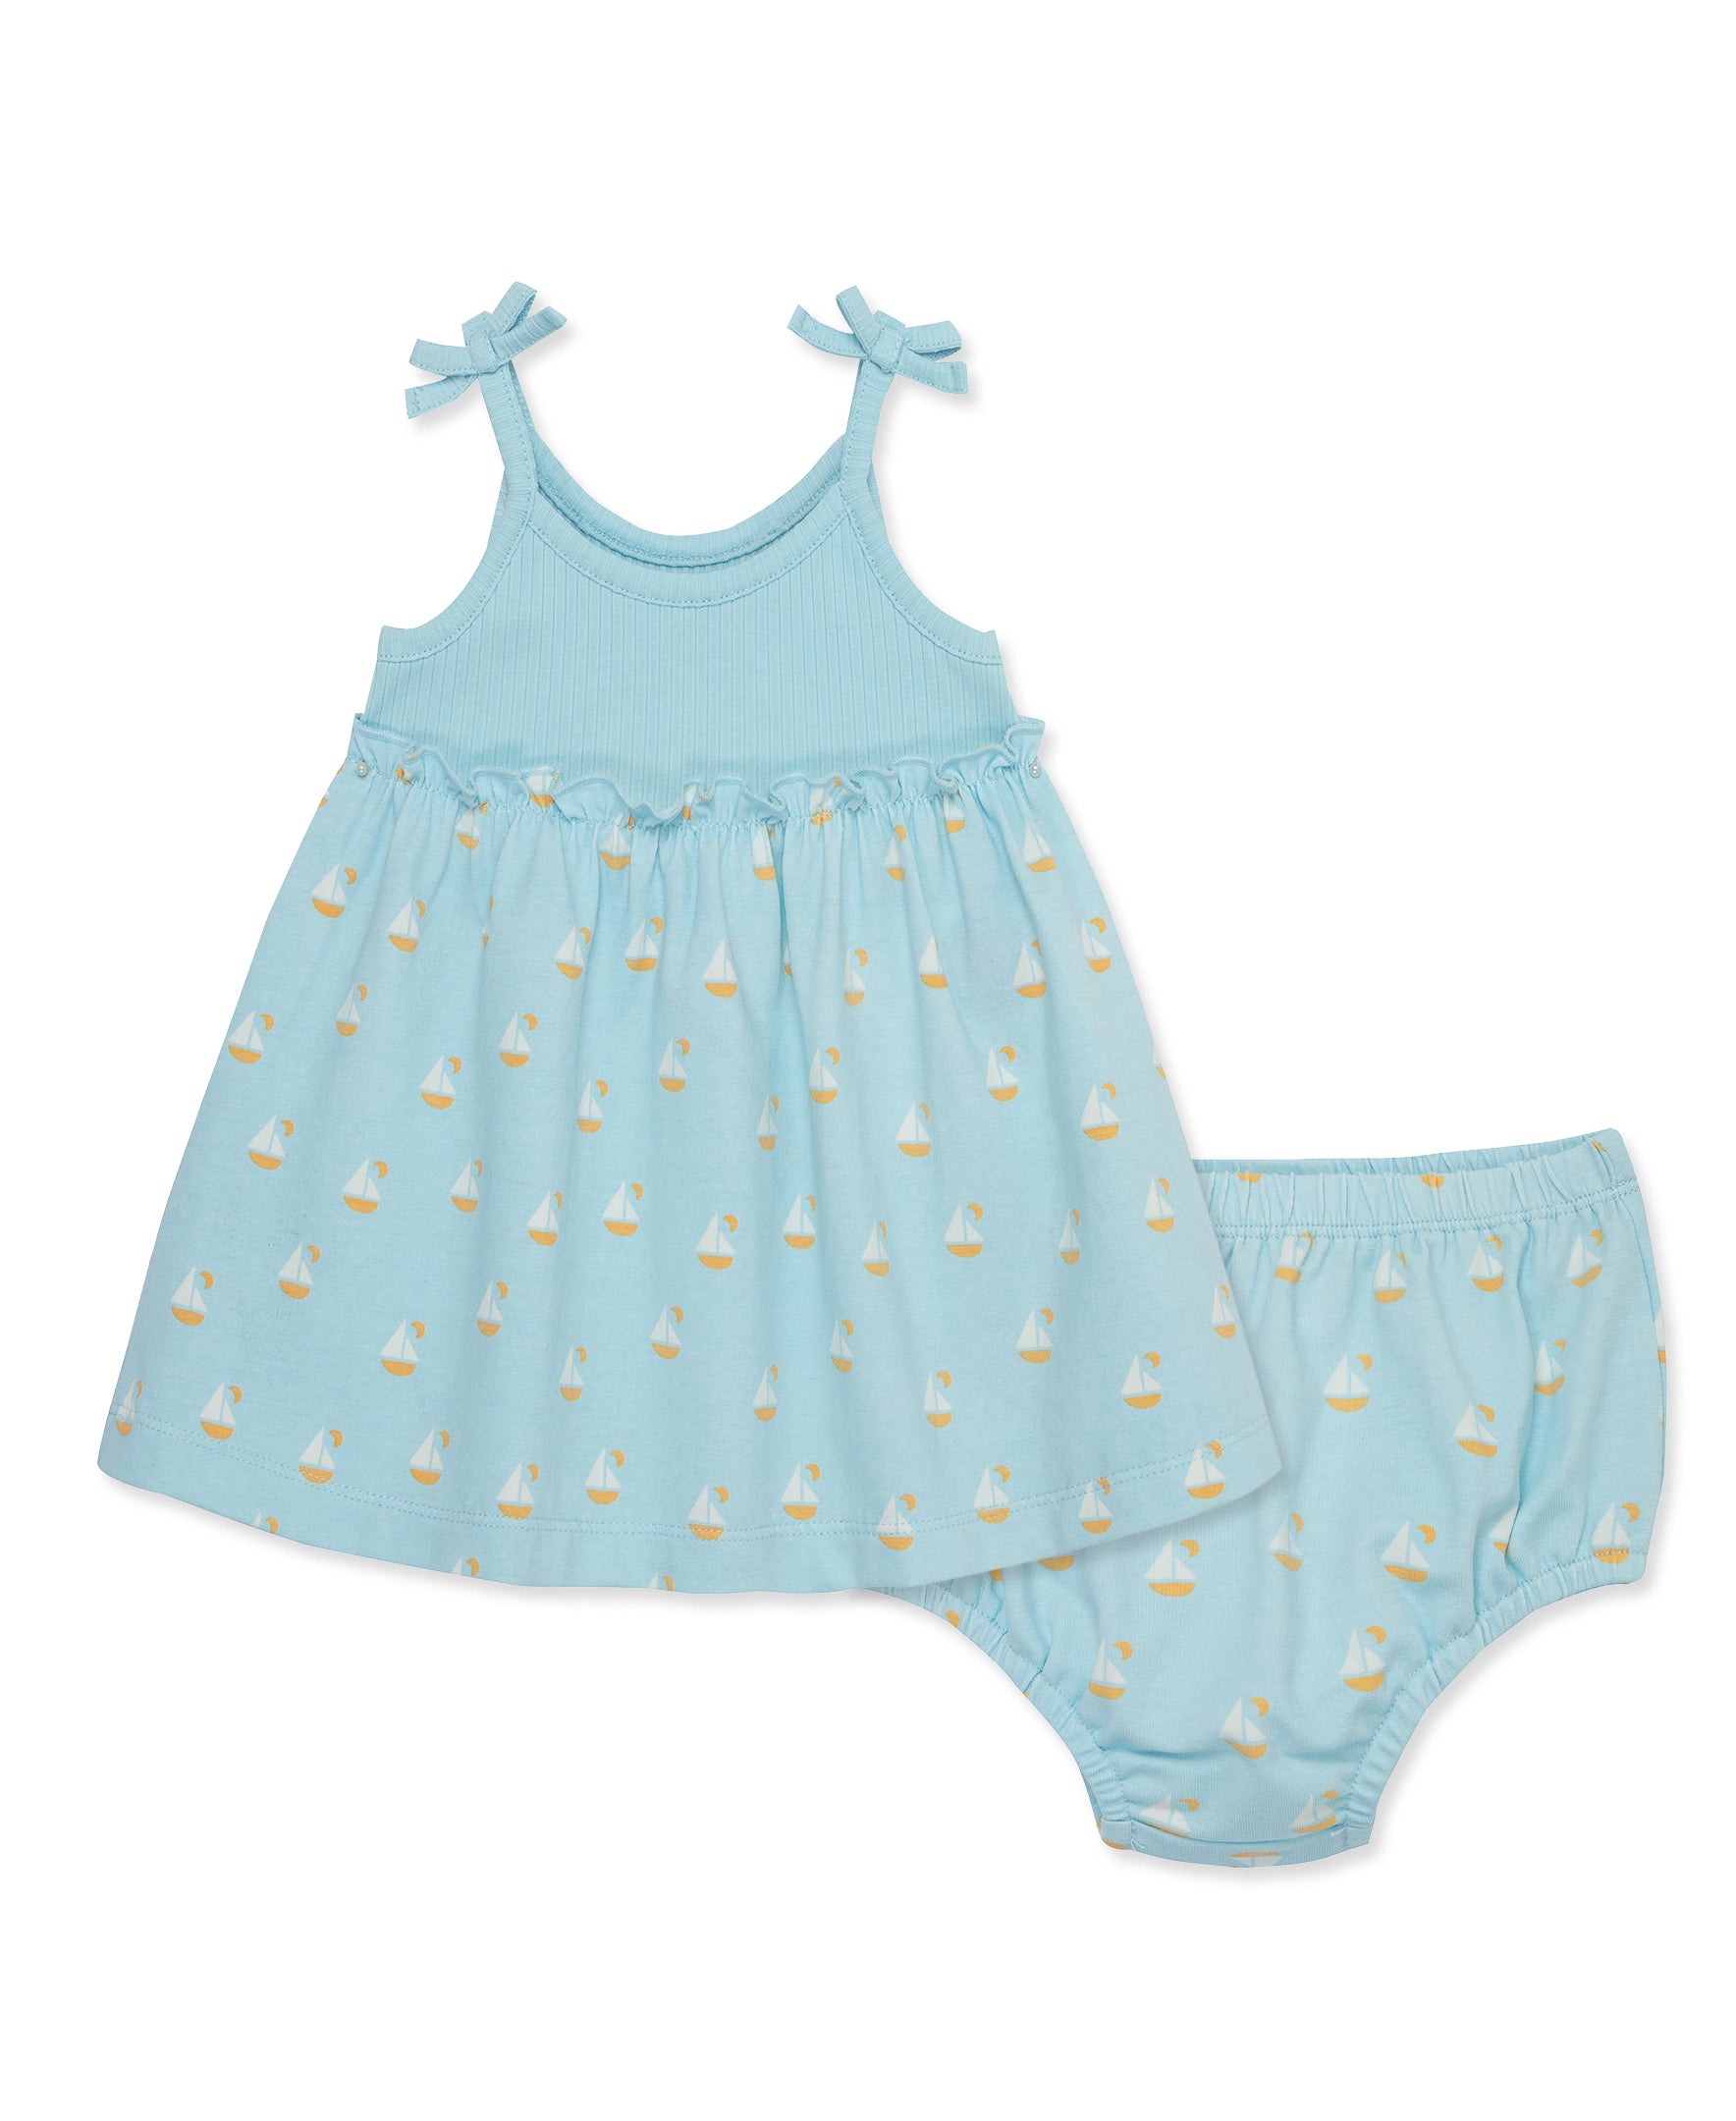 Children's Summer Clothes | Baby Girls Home Clothes | Summer Night Dress  Home - Girls - Aliexpress